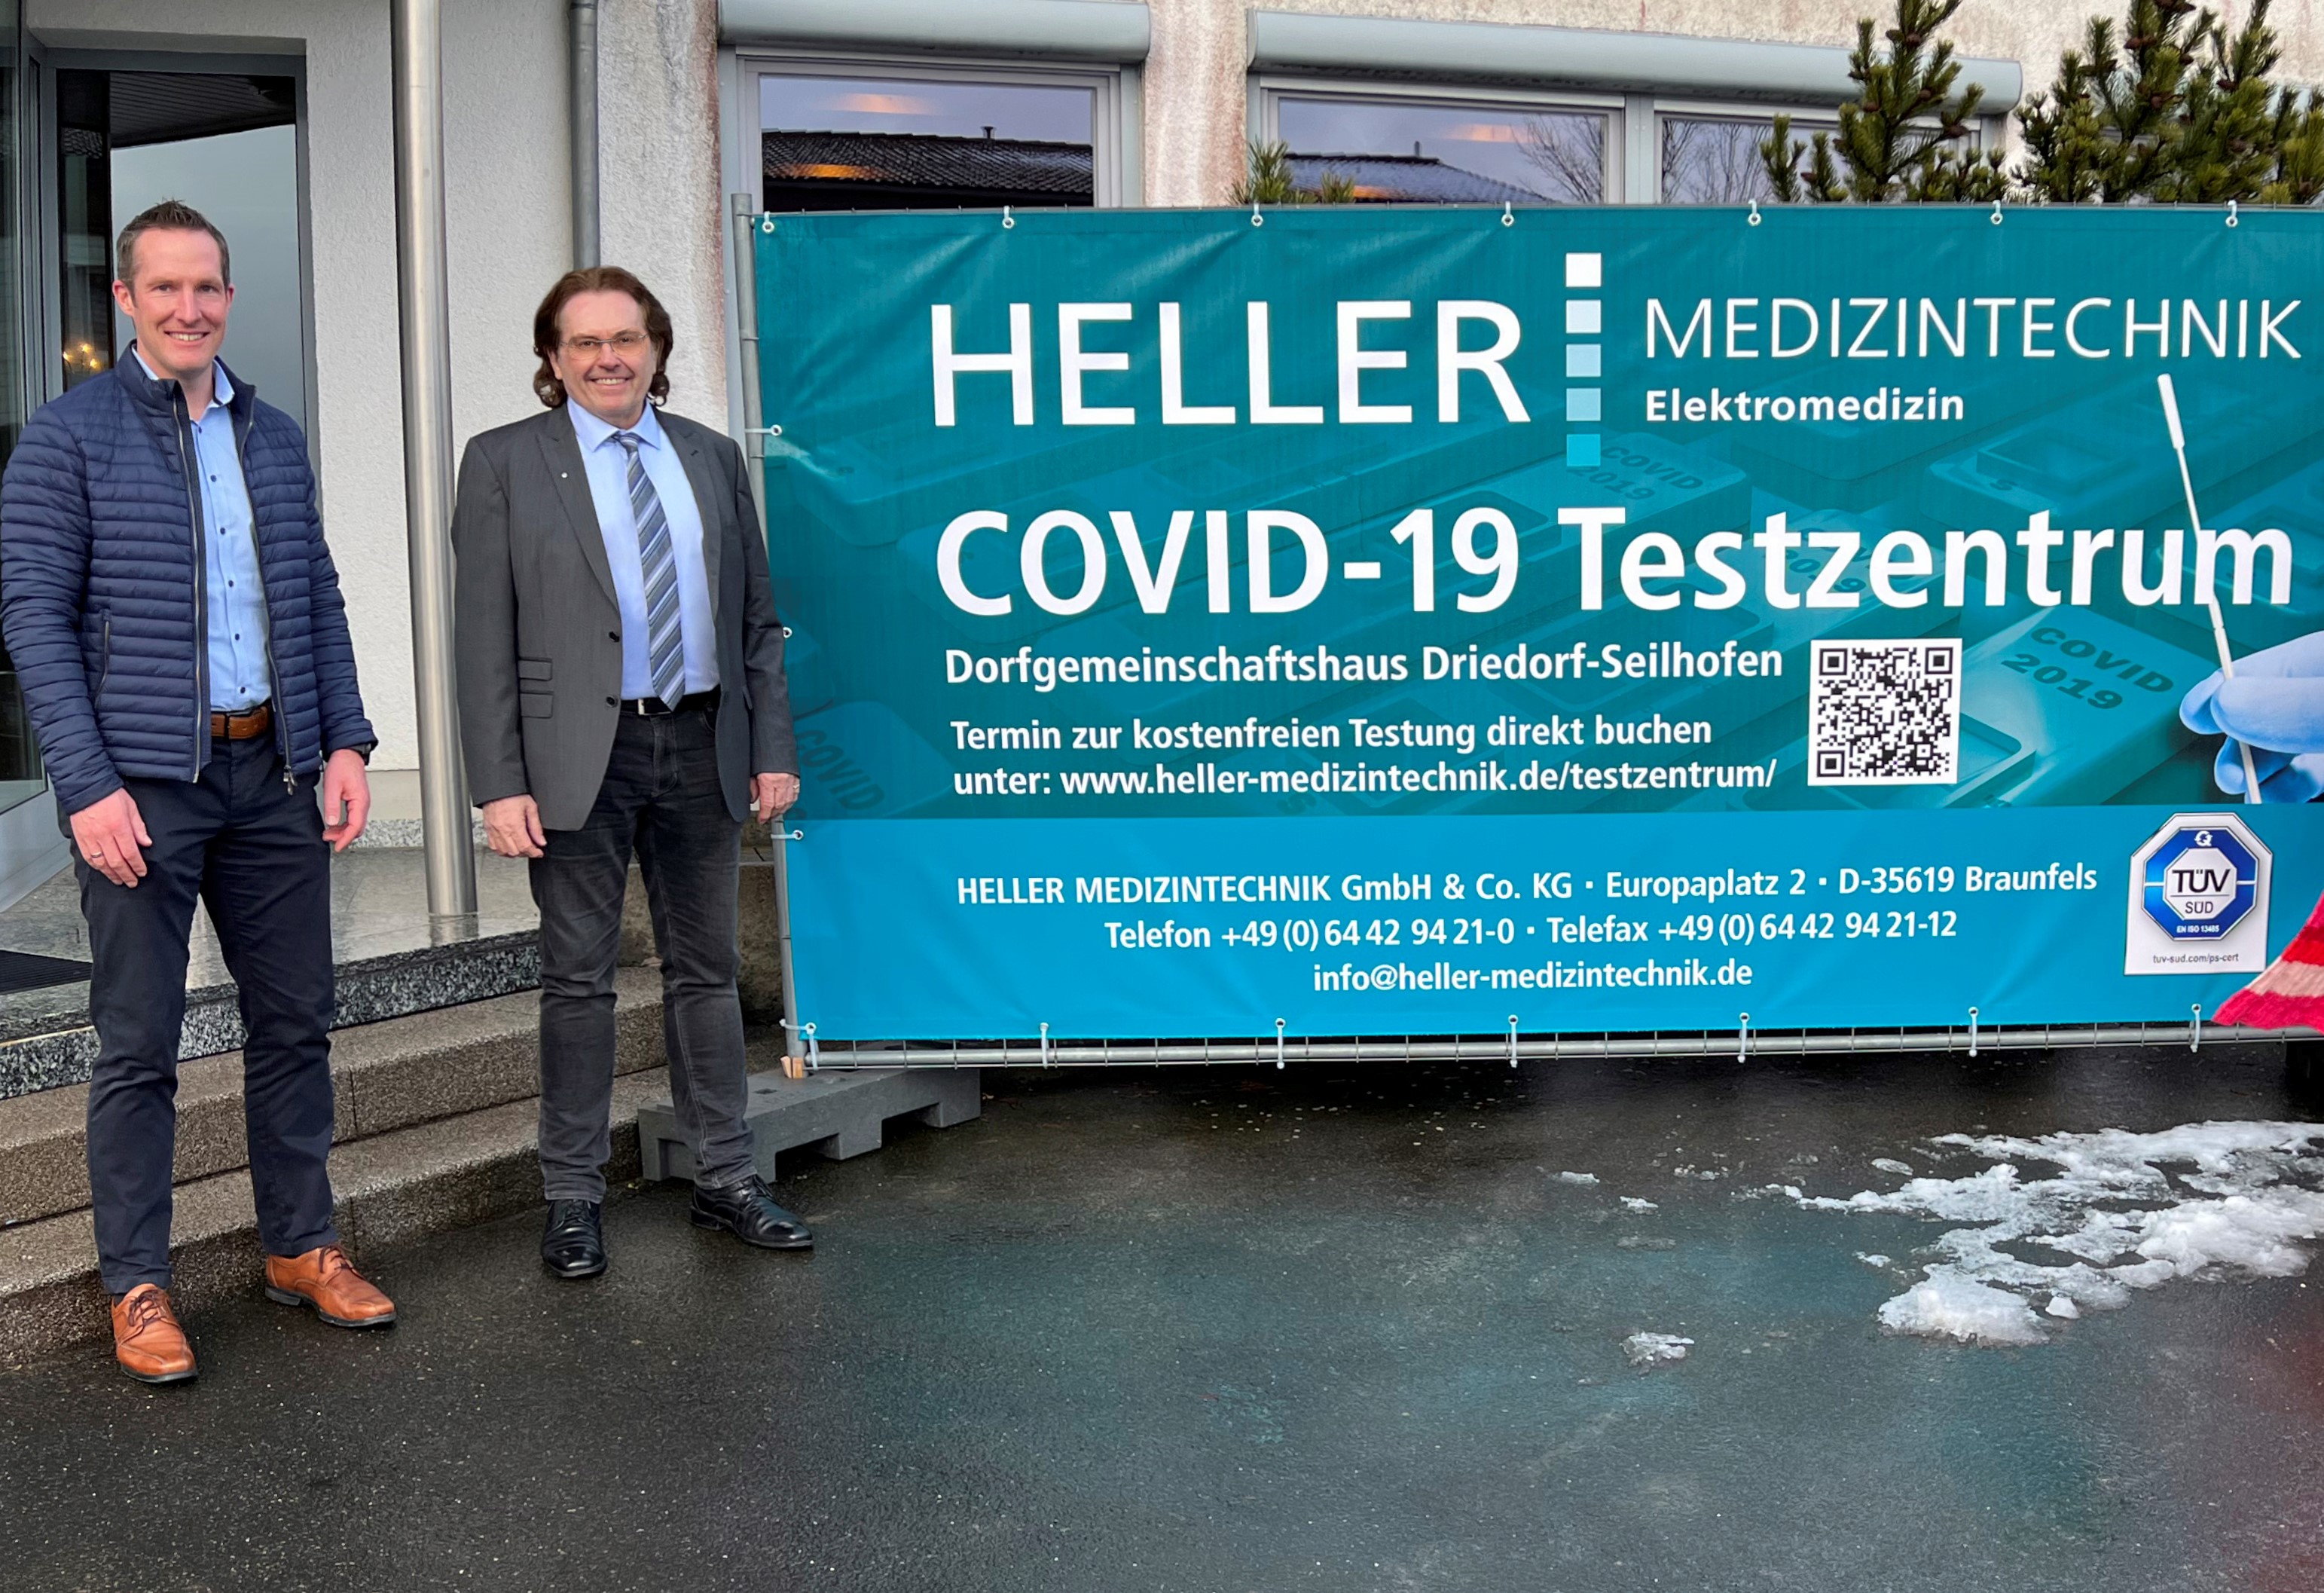 COVID-19 Schnelltest buchen bei HELLER MEDIZINTECHNIK GmbH & Co. KG